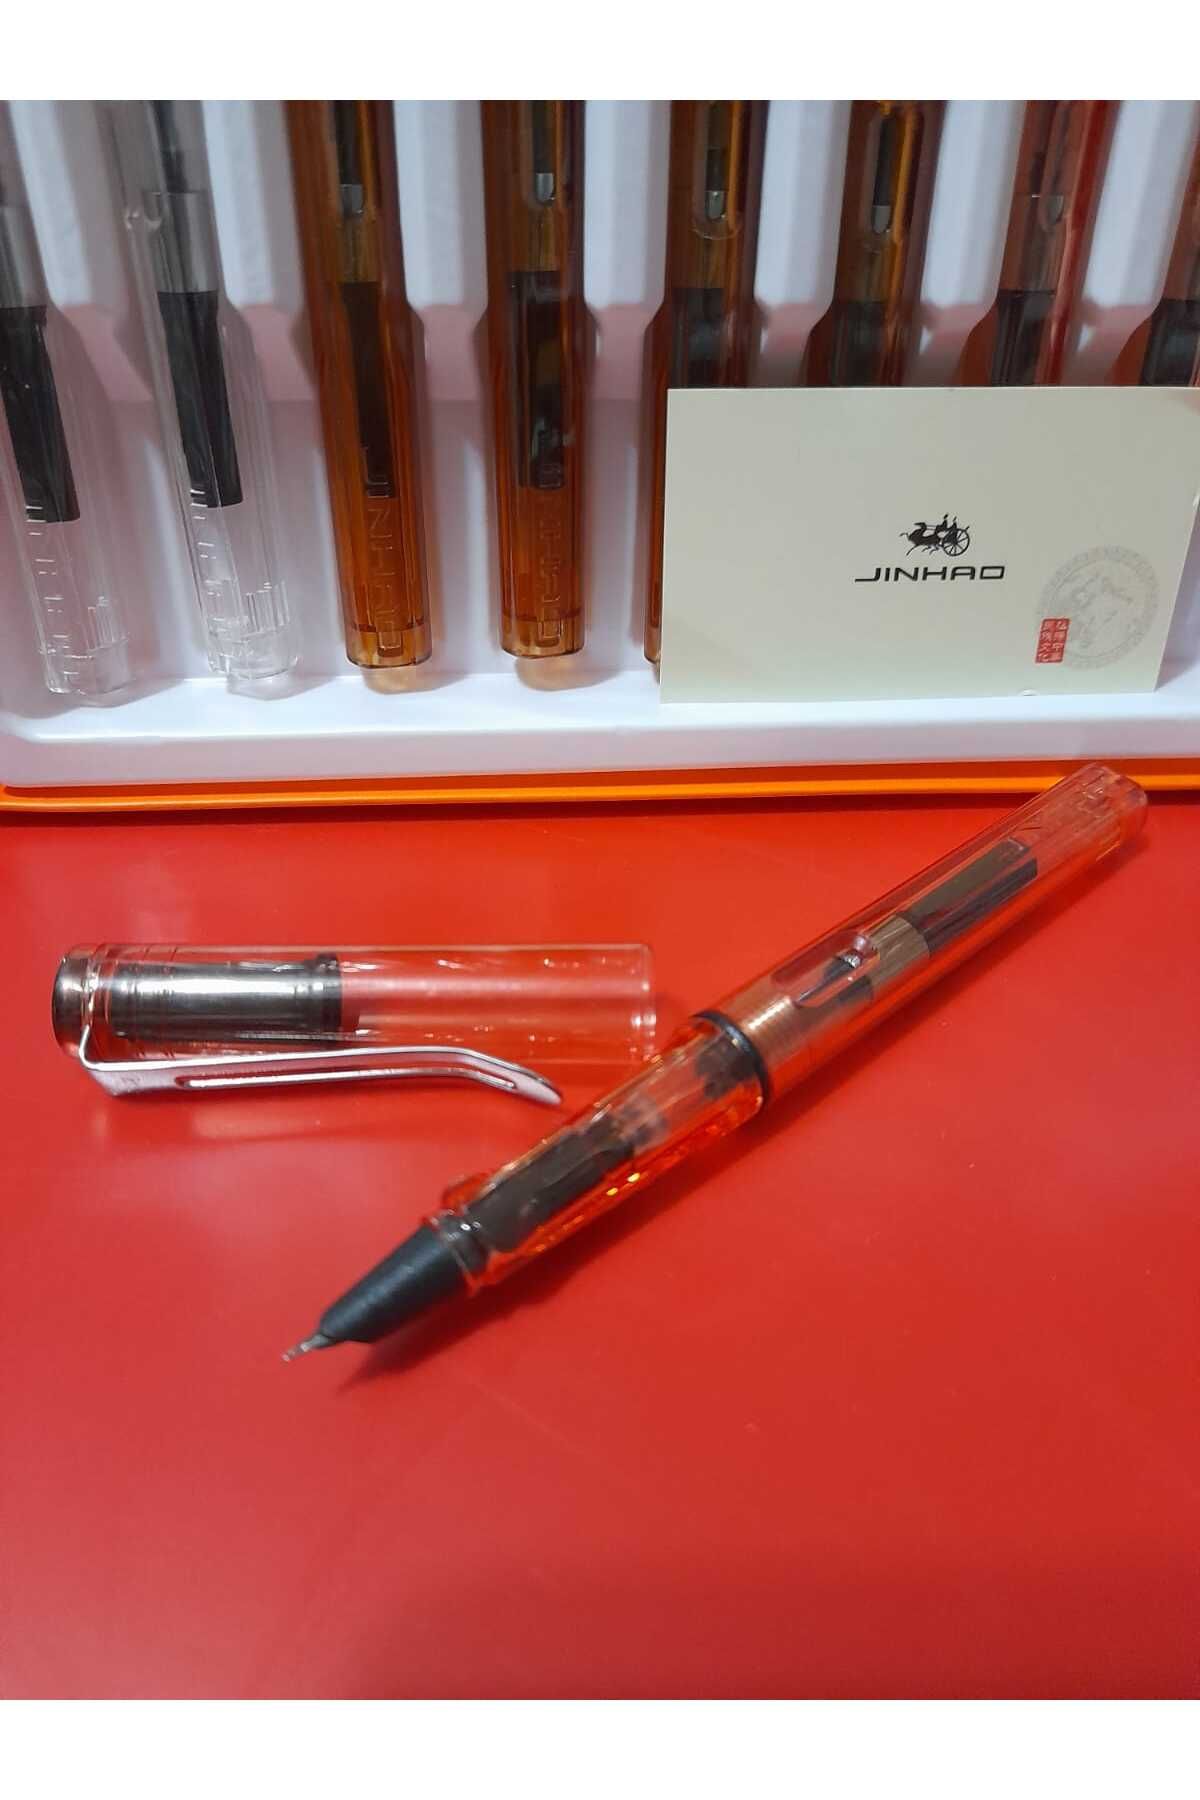 jinhao dolma kalem 0,38mm extra ince uç şeffaf gövde TURUNCU,mürekkep ve kartuşla kullanılabilir